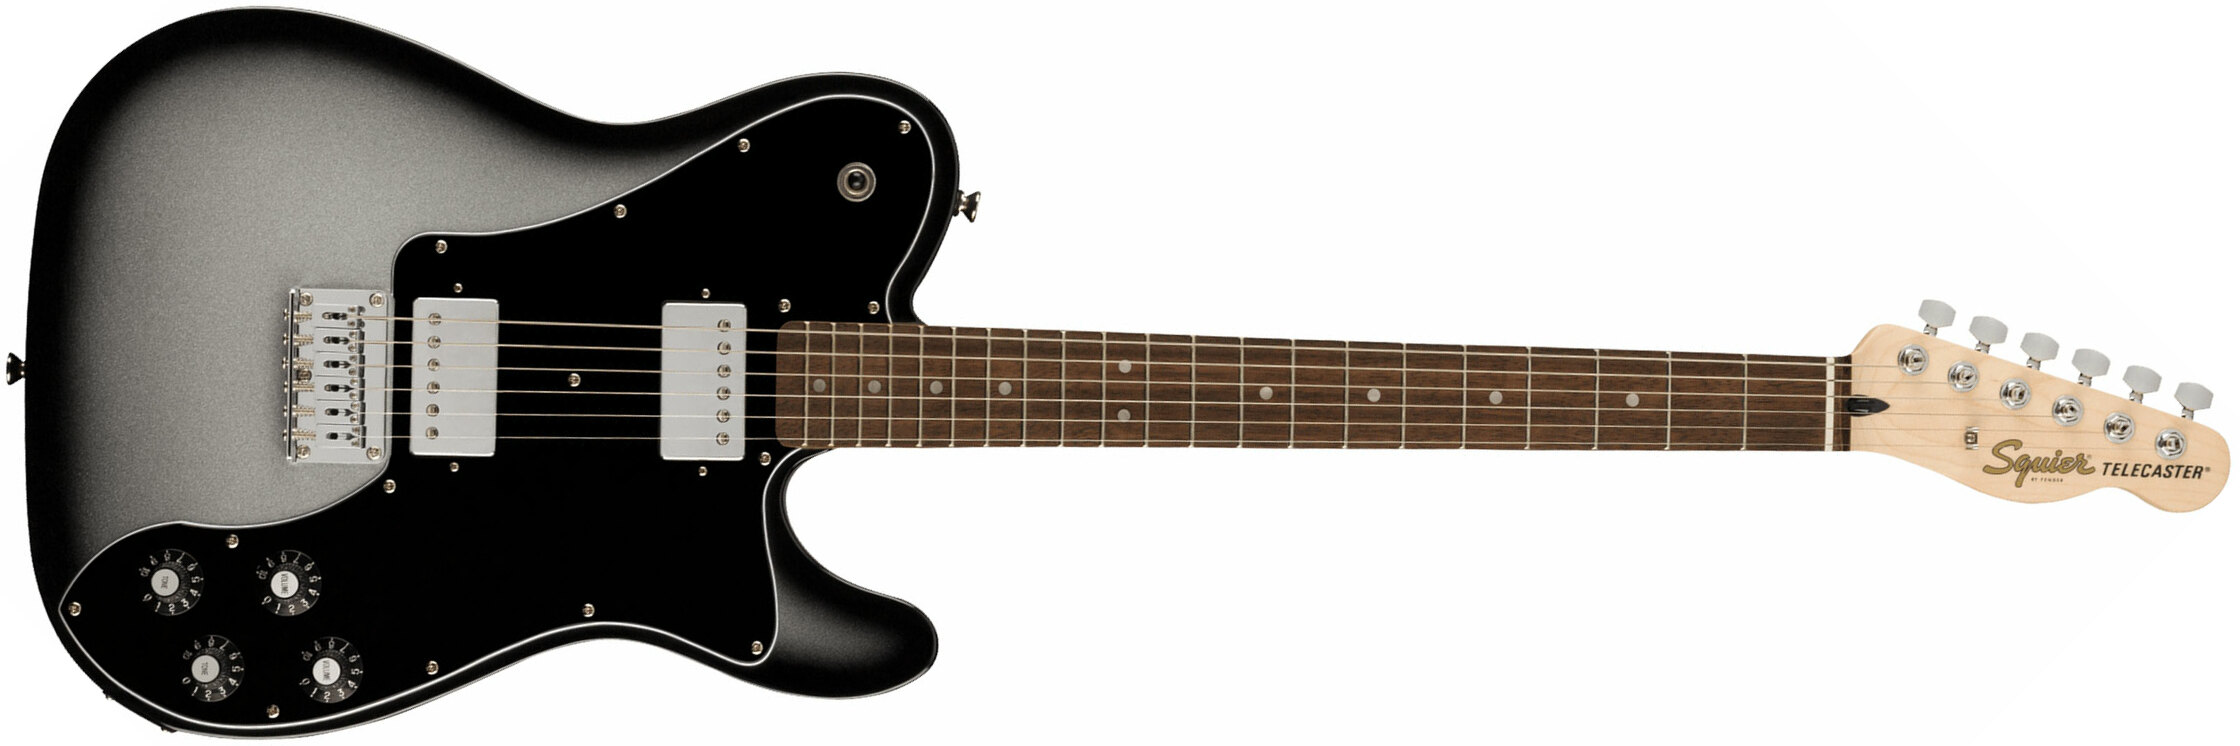 Squier Tele Affinity Deluxe Fsr Ltd Hh Ht Lau - Silverburst - Tel shape electric guitar - Main picture